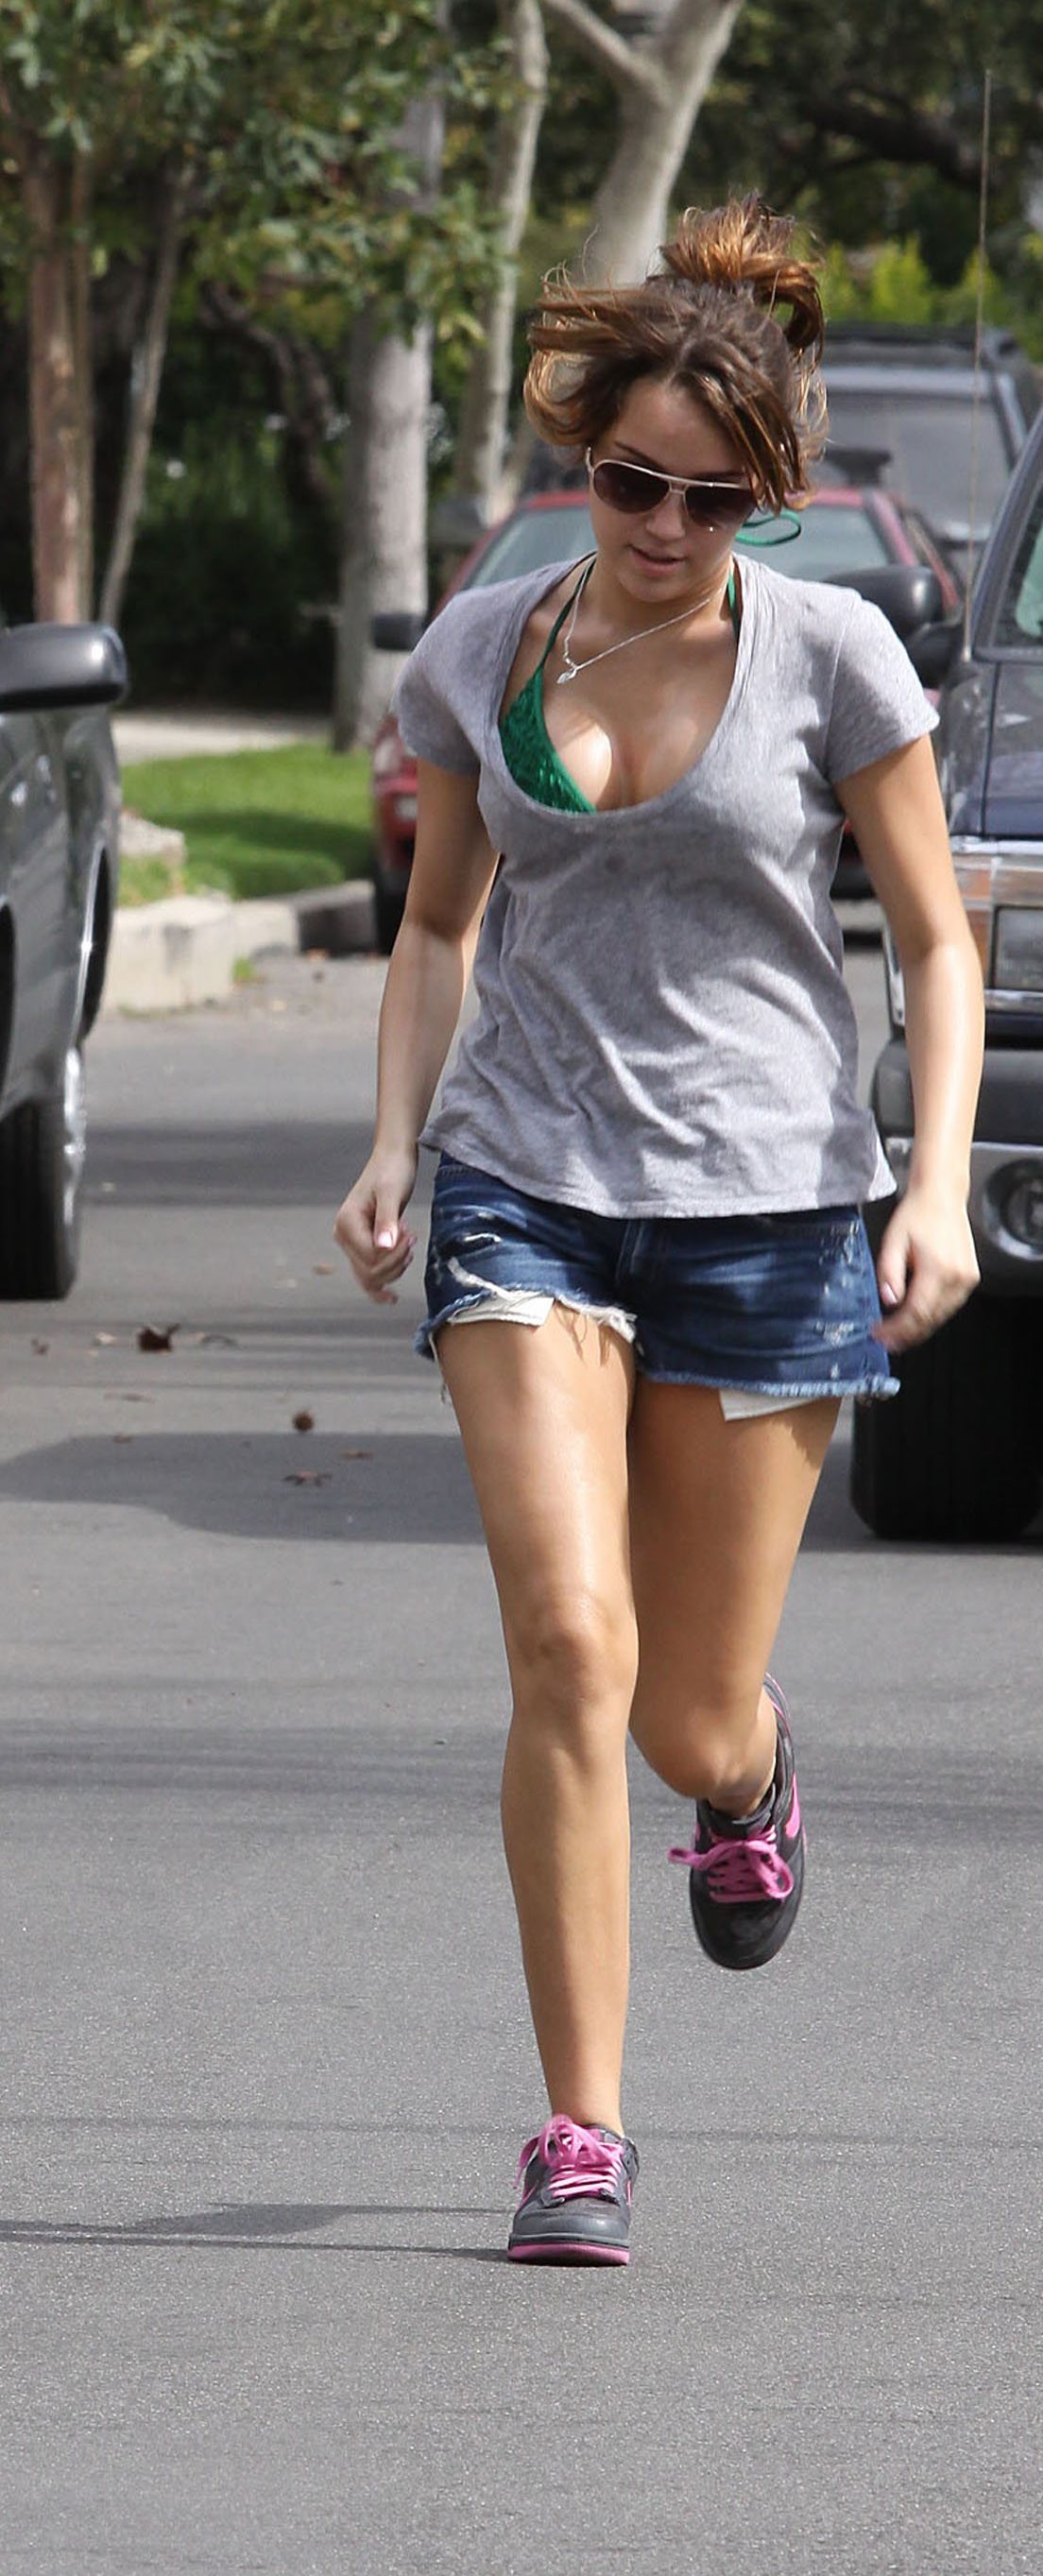 Miley Cyrus Jogging in Bikini Top!!!